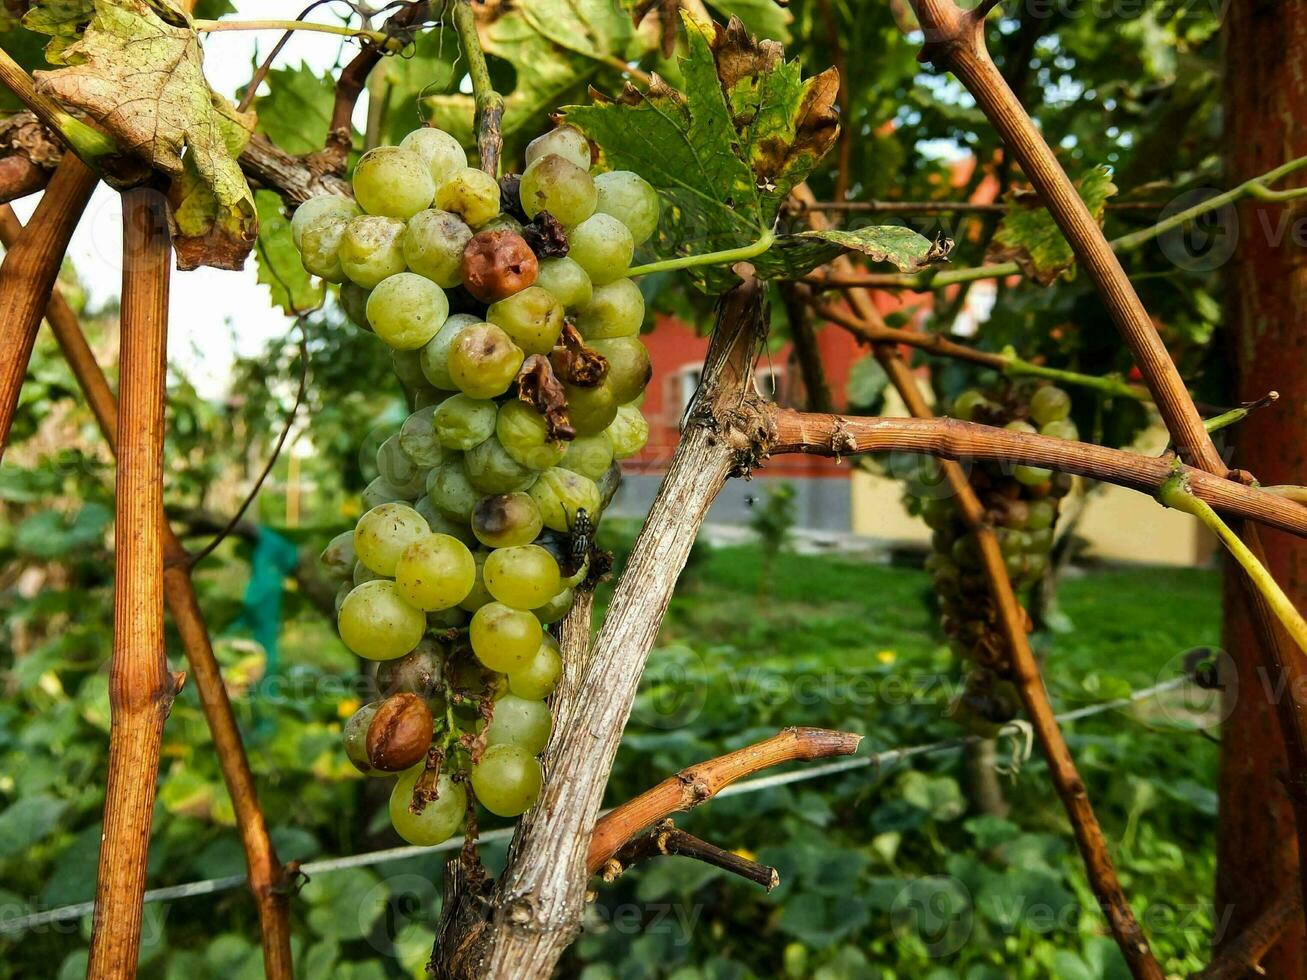 raisins sur la vigne photo